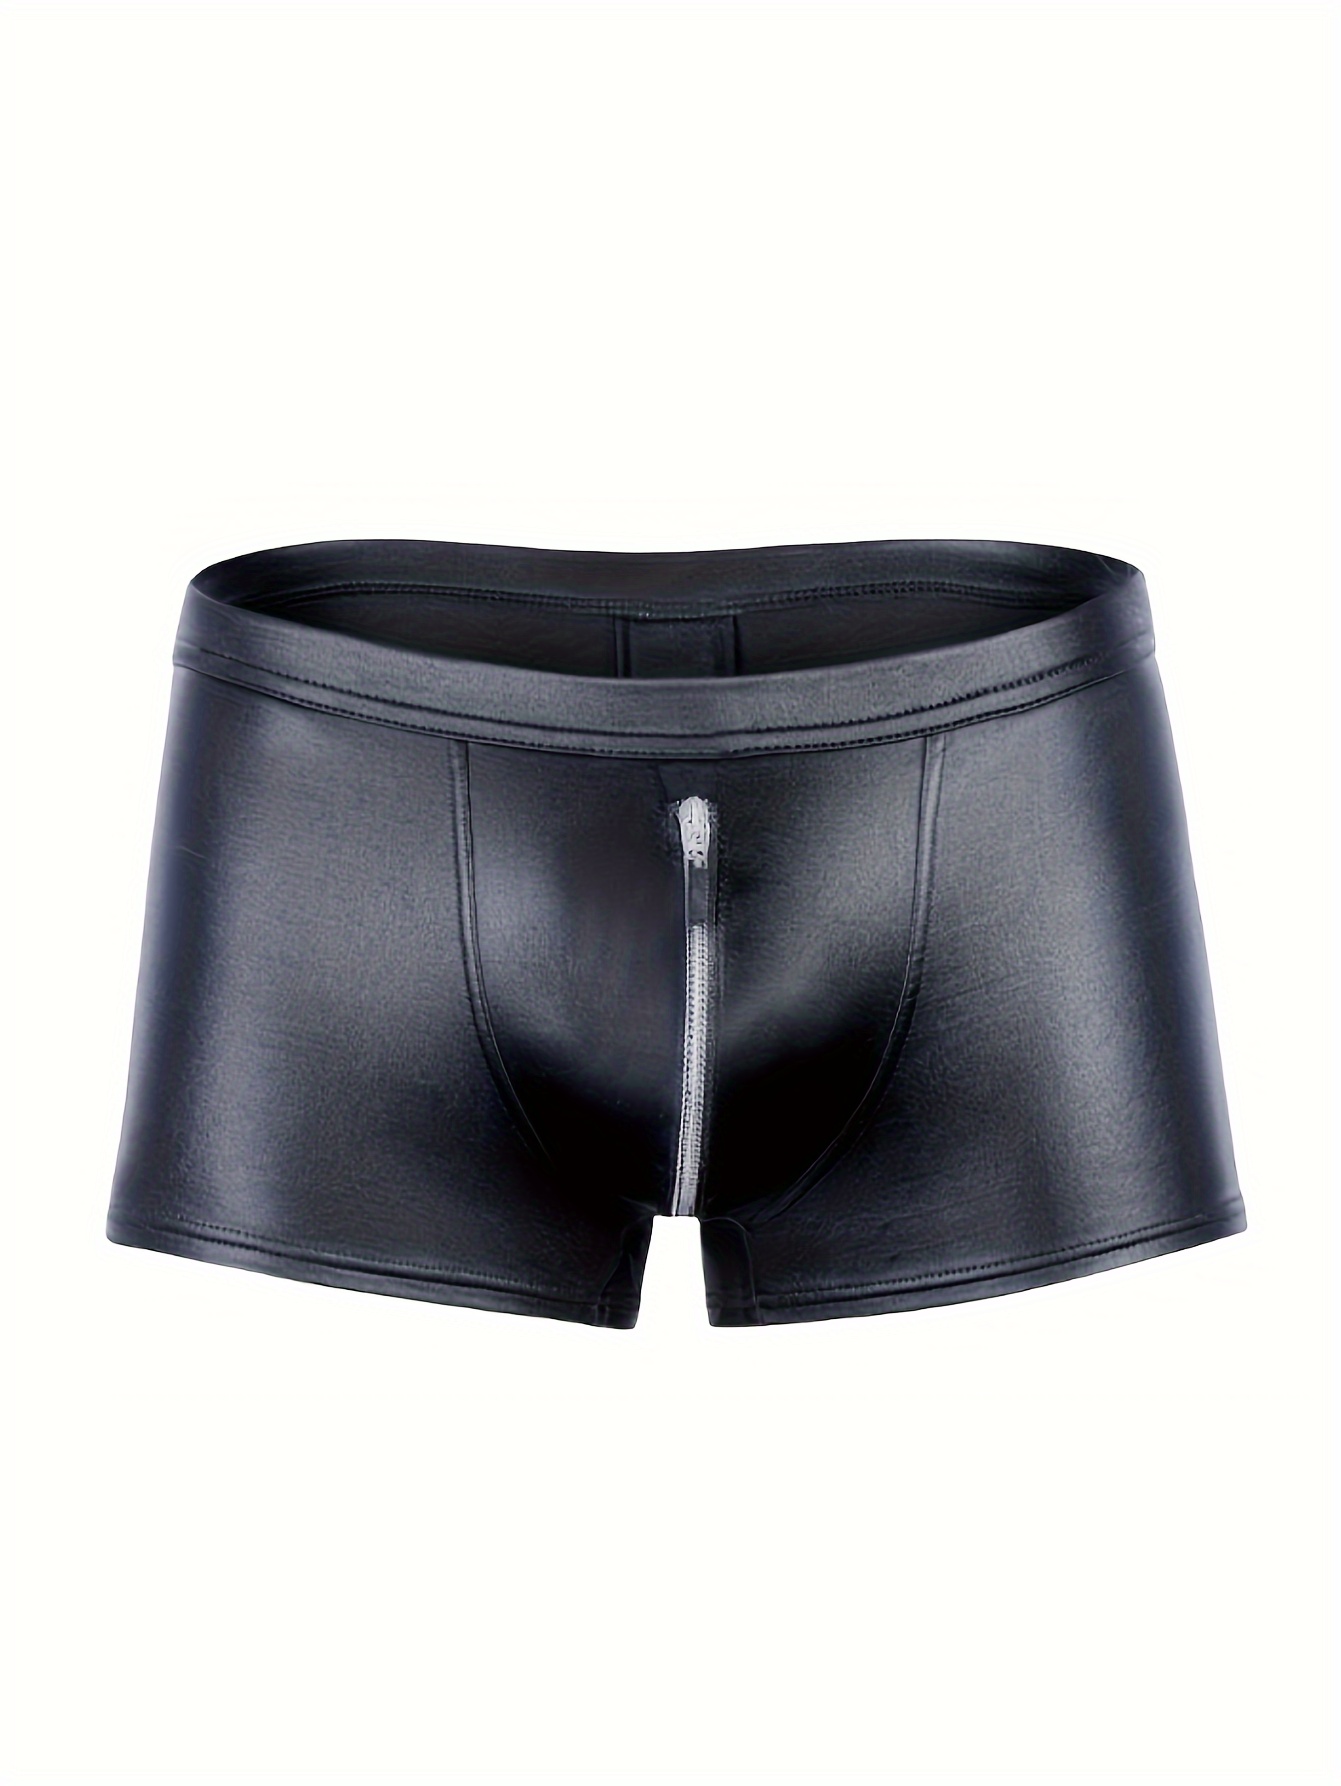 Men's Sexy Leather Boxer Briefs Shorts, Low Waist Zipper Boxer Pants, Men's  Underwear